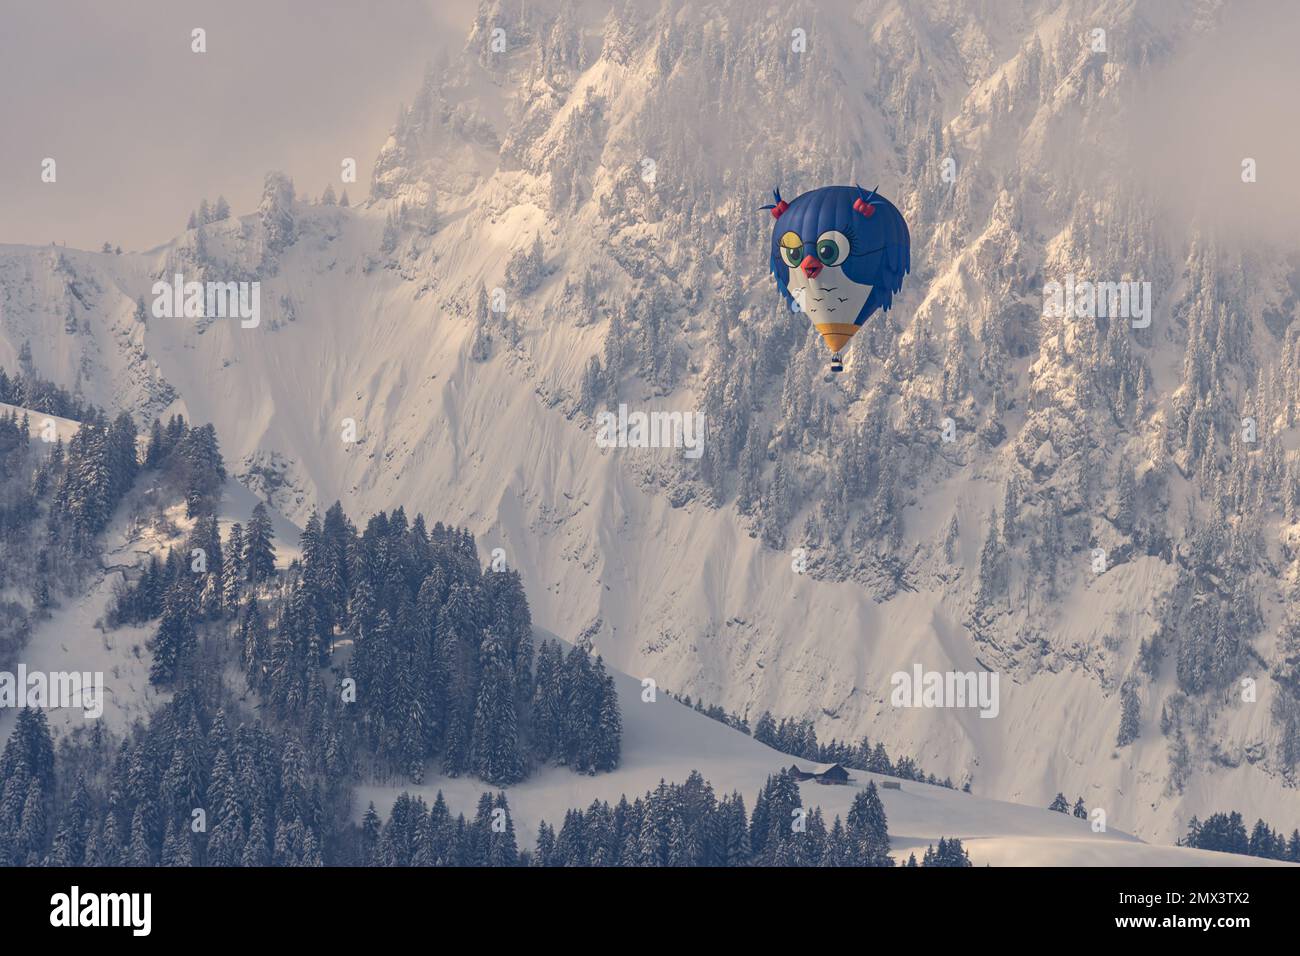 Heißluftballon. Eine Vogelform Heißluftballonfahrt, die im Winter gegen schneebedeckte Berge fliegt. Chateau-d'Oex, Vaud, Schweiz. Stockfoto